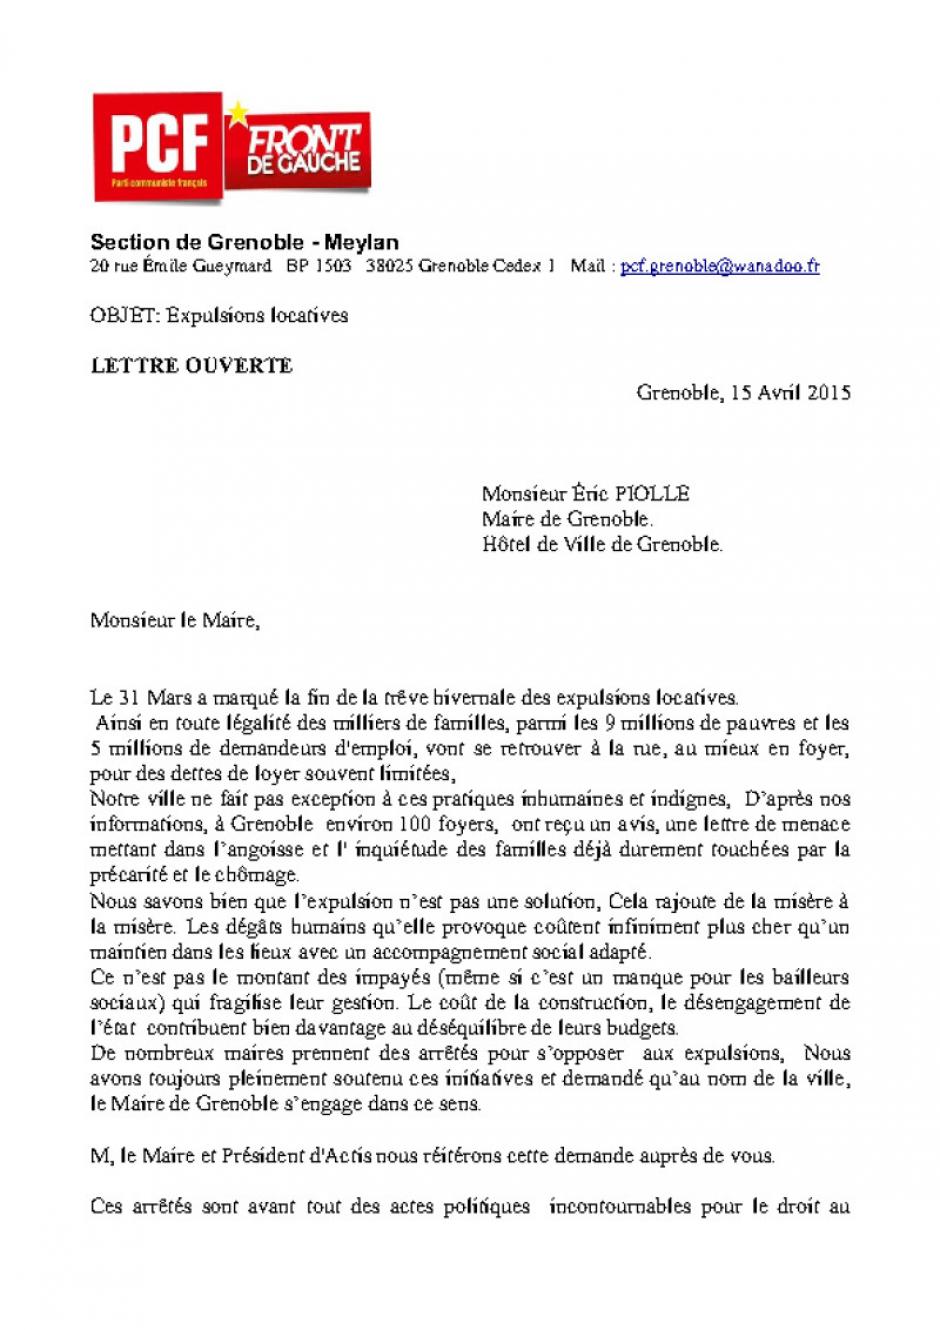 Lettre Ouverte au Maire de Grenoble sur les expulsions locatives!